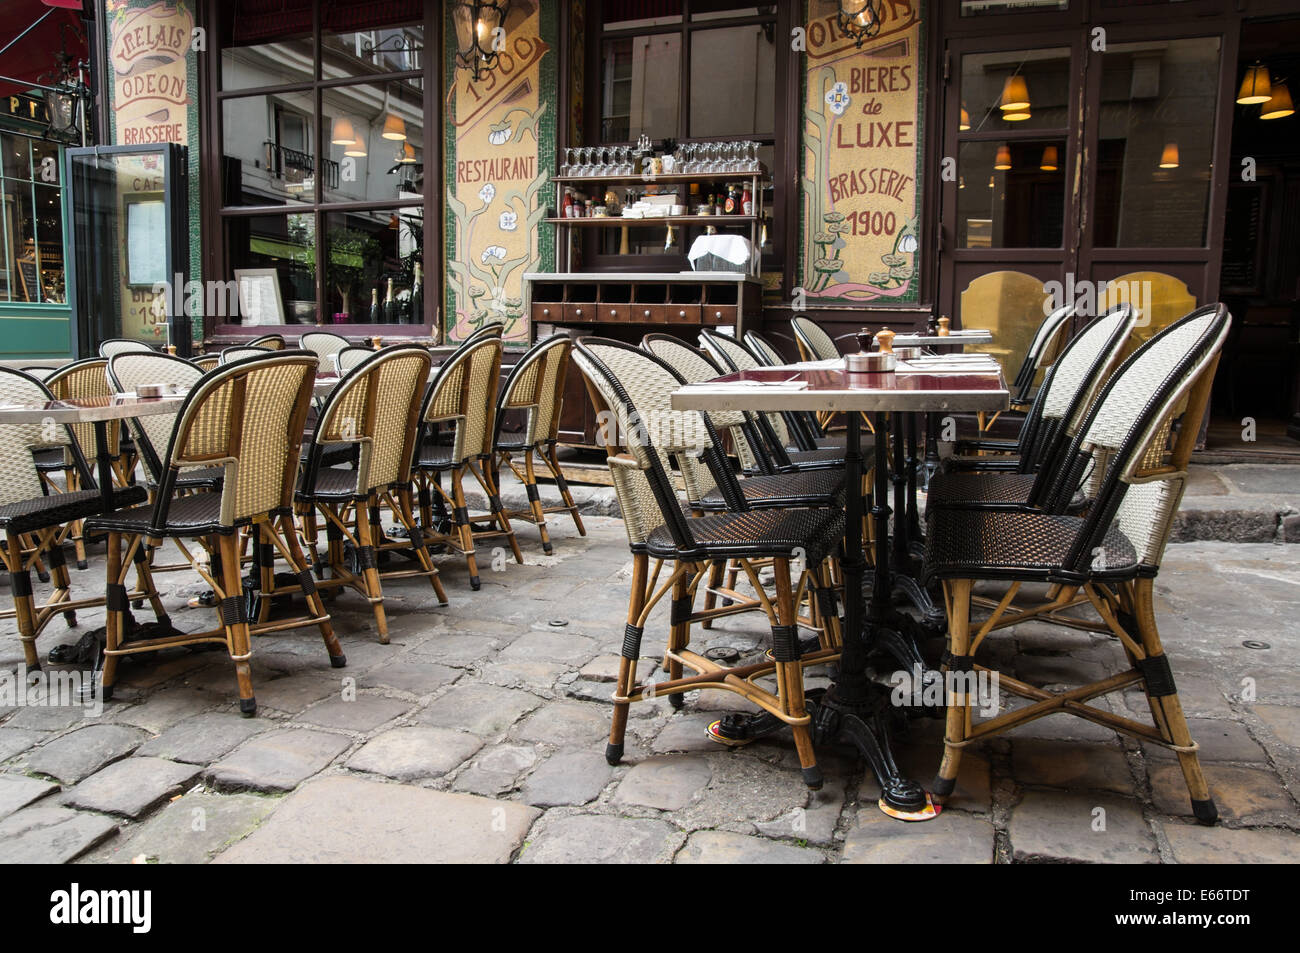 Cafe on Passage de Cour de Commerce Saint-Andre in Latin Quarter, Paris, France Stock Photo